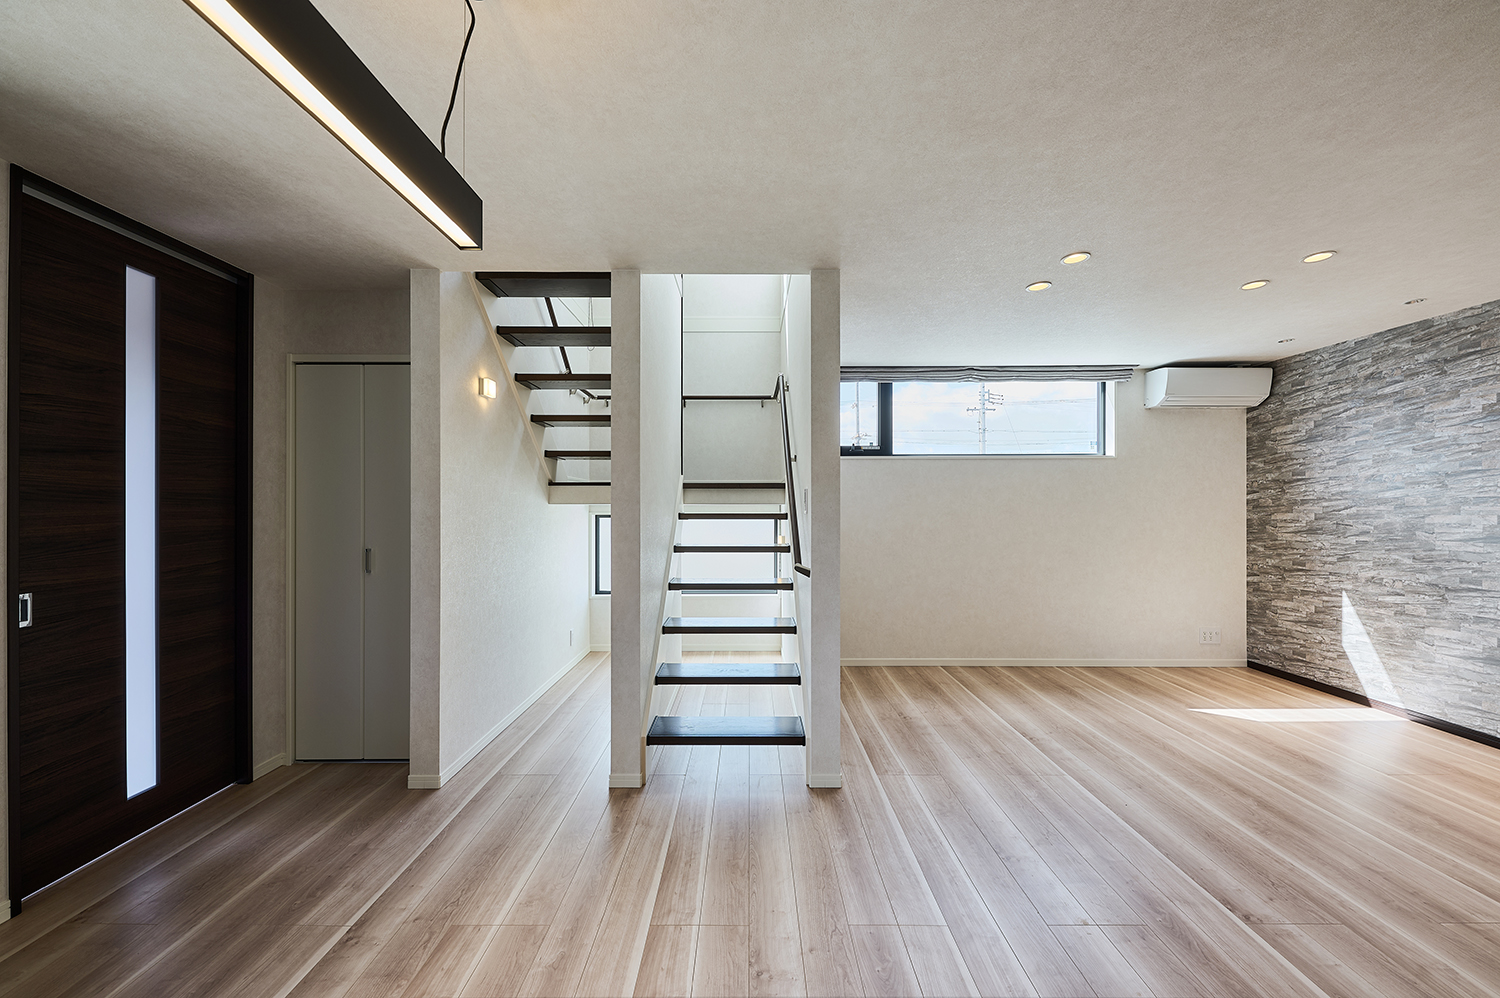 T-4／オープン階段は光を取り込み空間を広く見せ爽やかな印象を与えてくれるだけでなく、空間のアクセントにも。